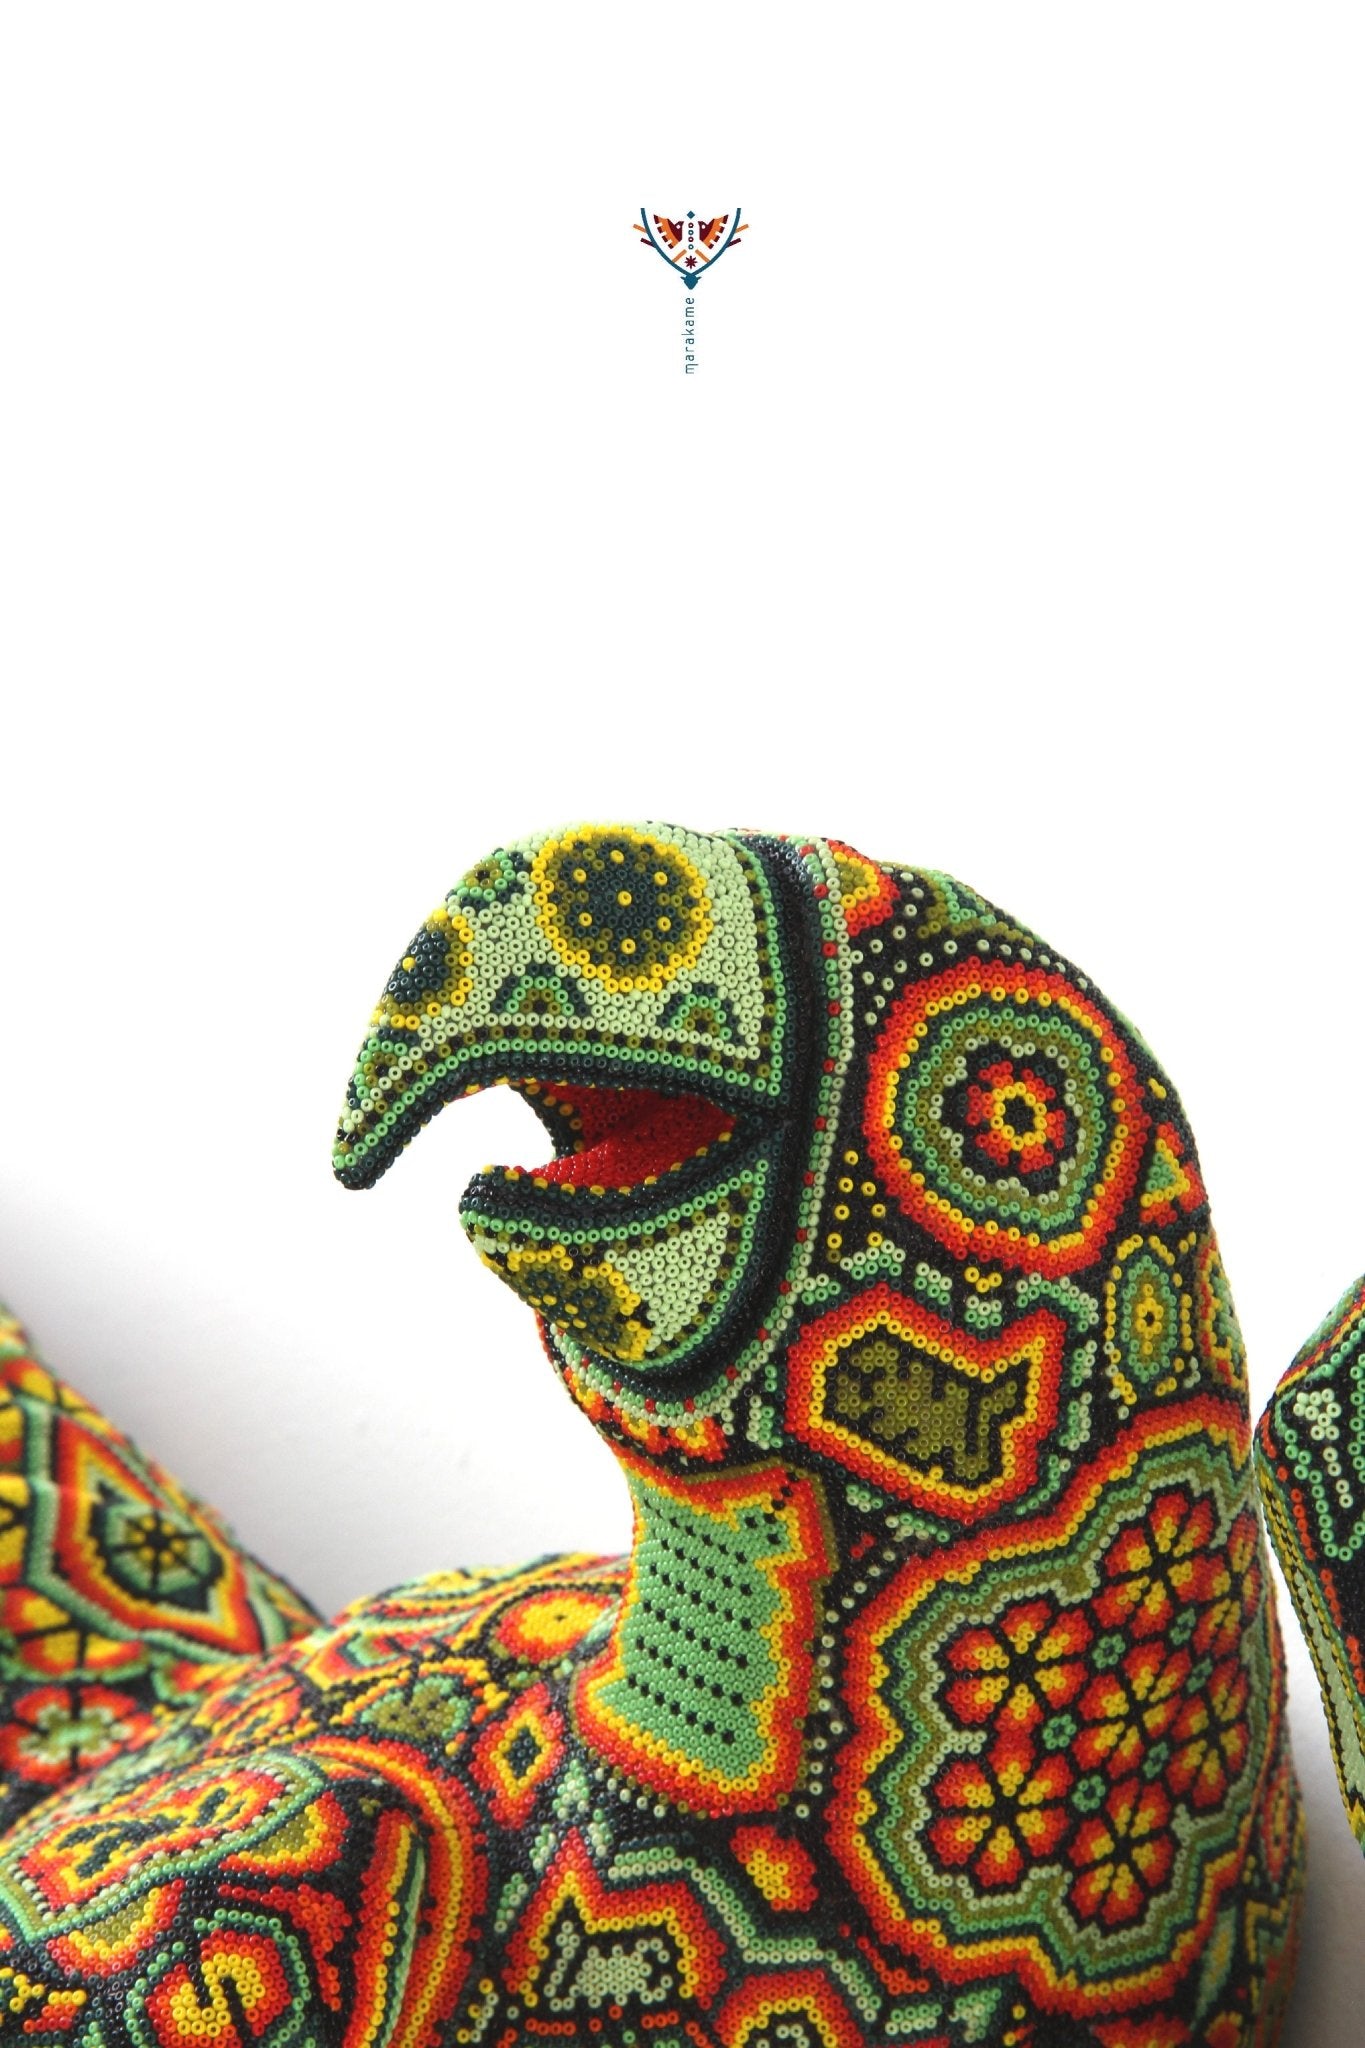 Sculpture Huichol Art - Macaw - Huichol Art - Marakame